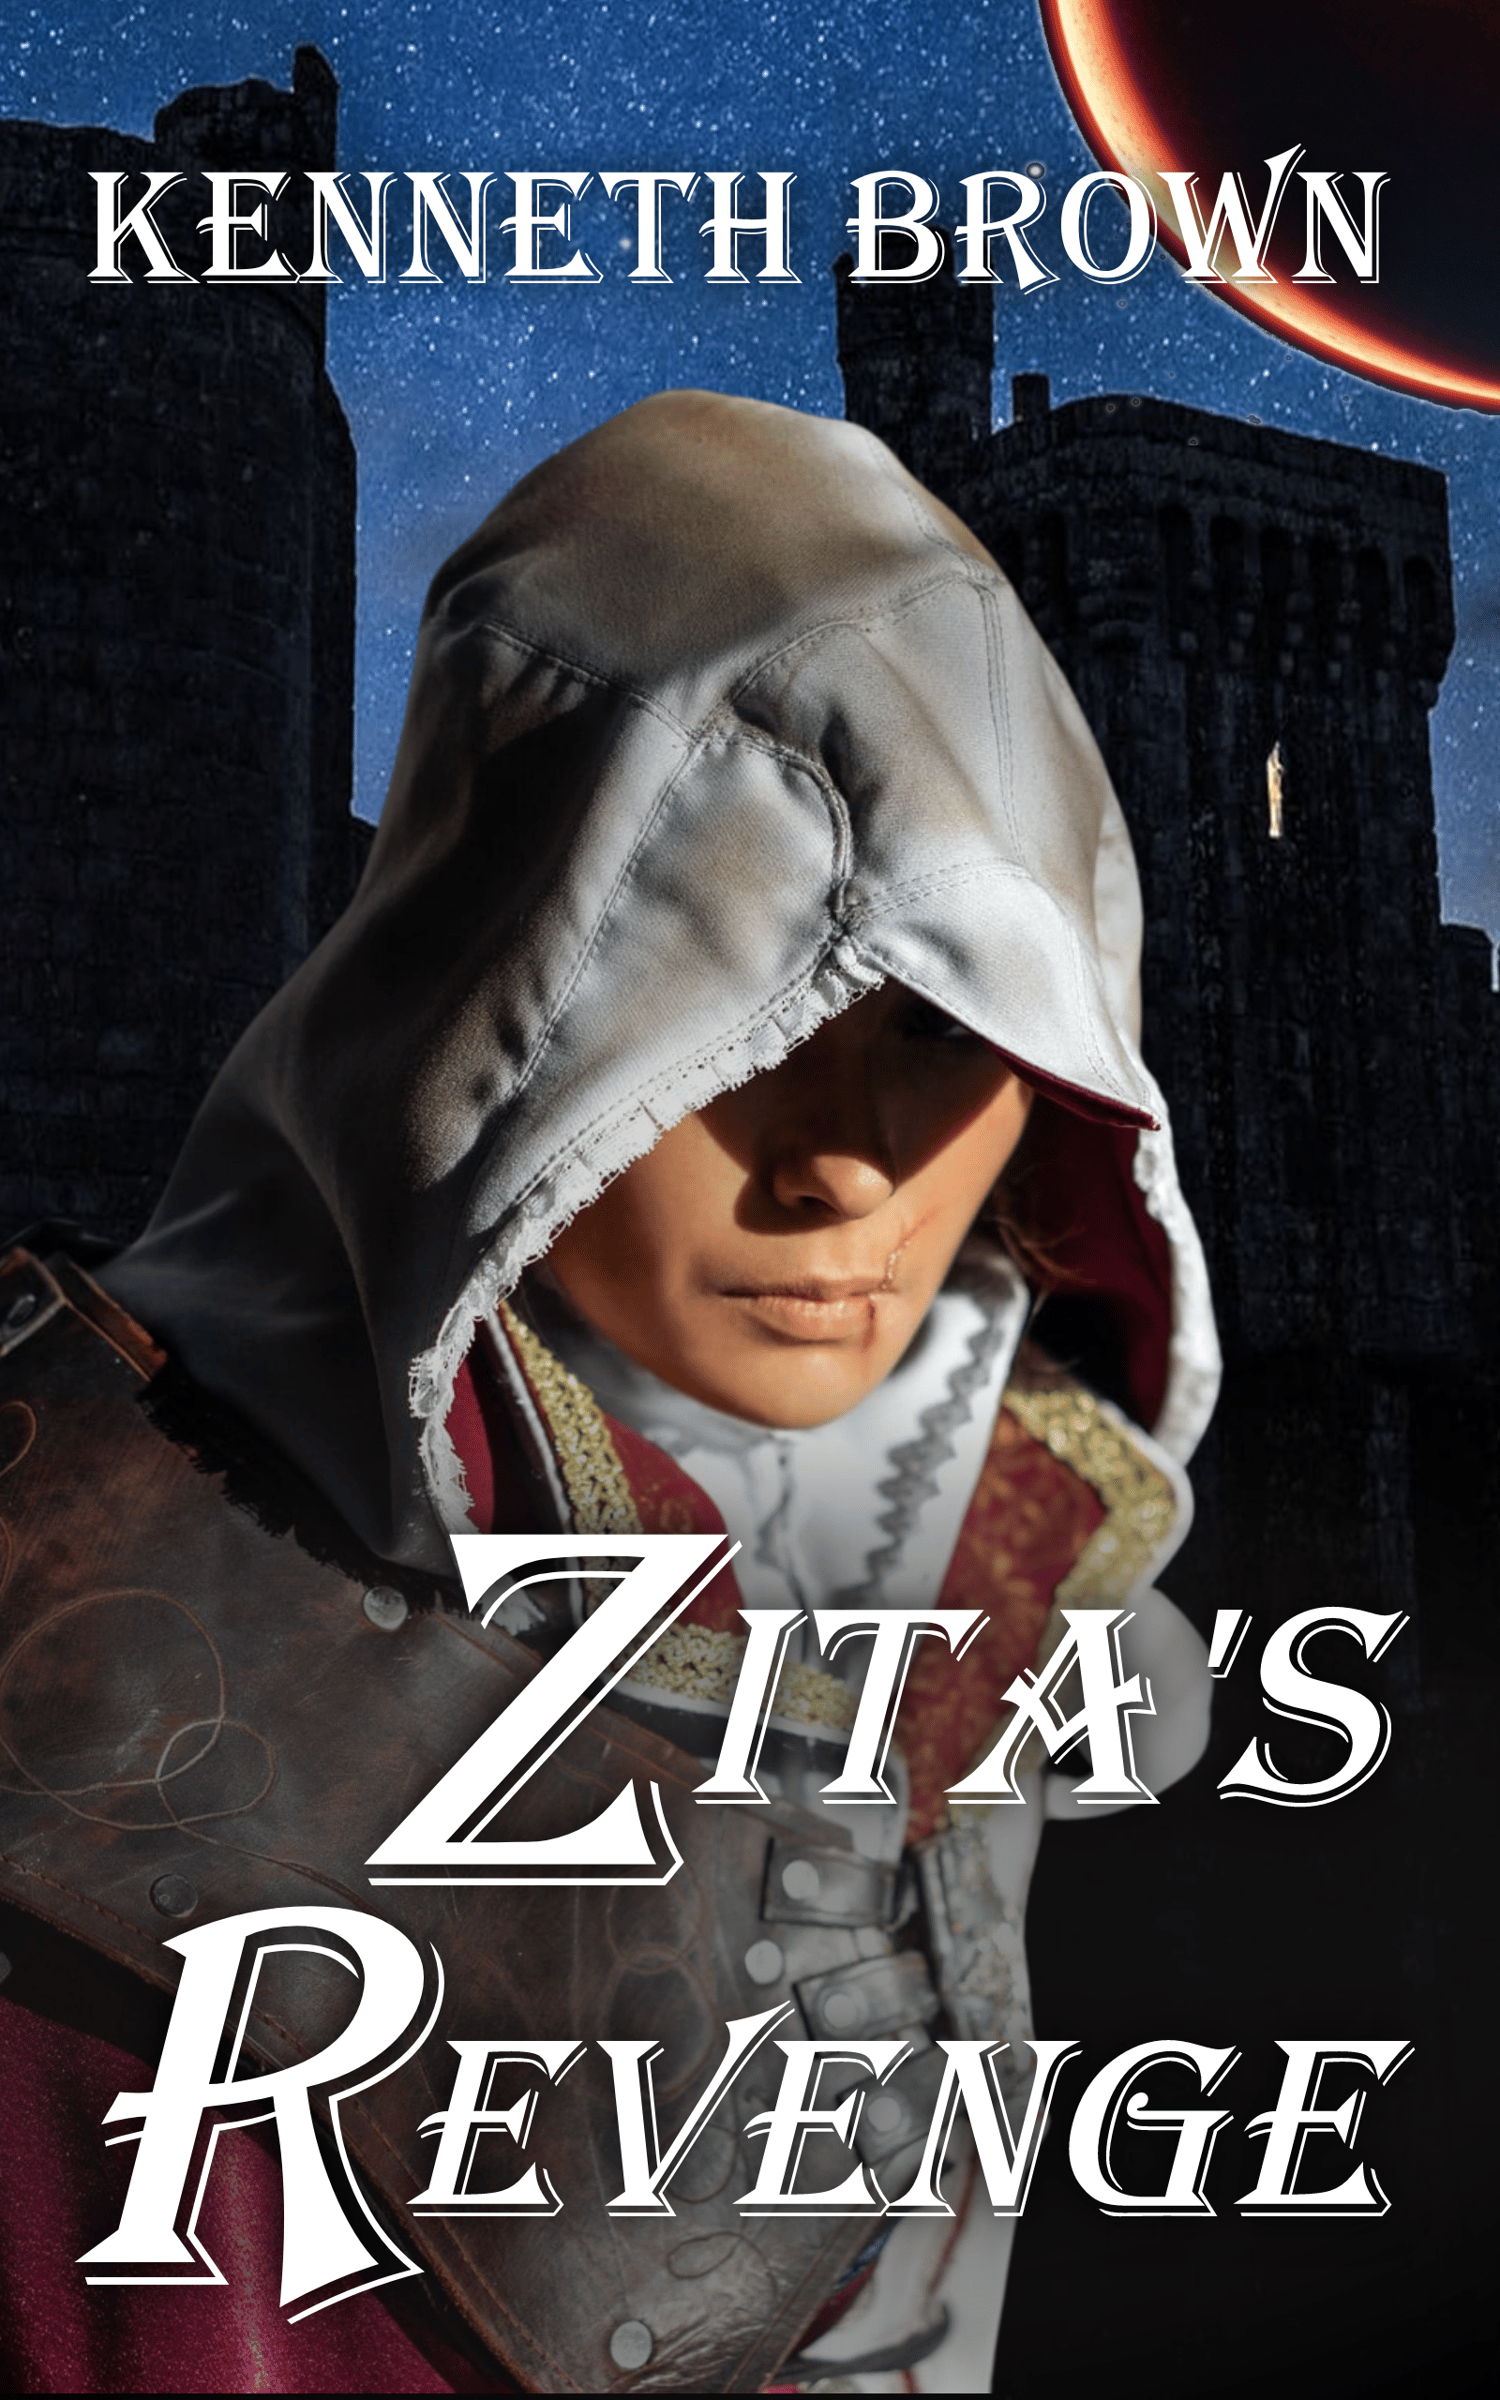 New cover Reveal for Zita's Revenge.